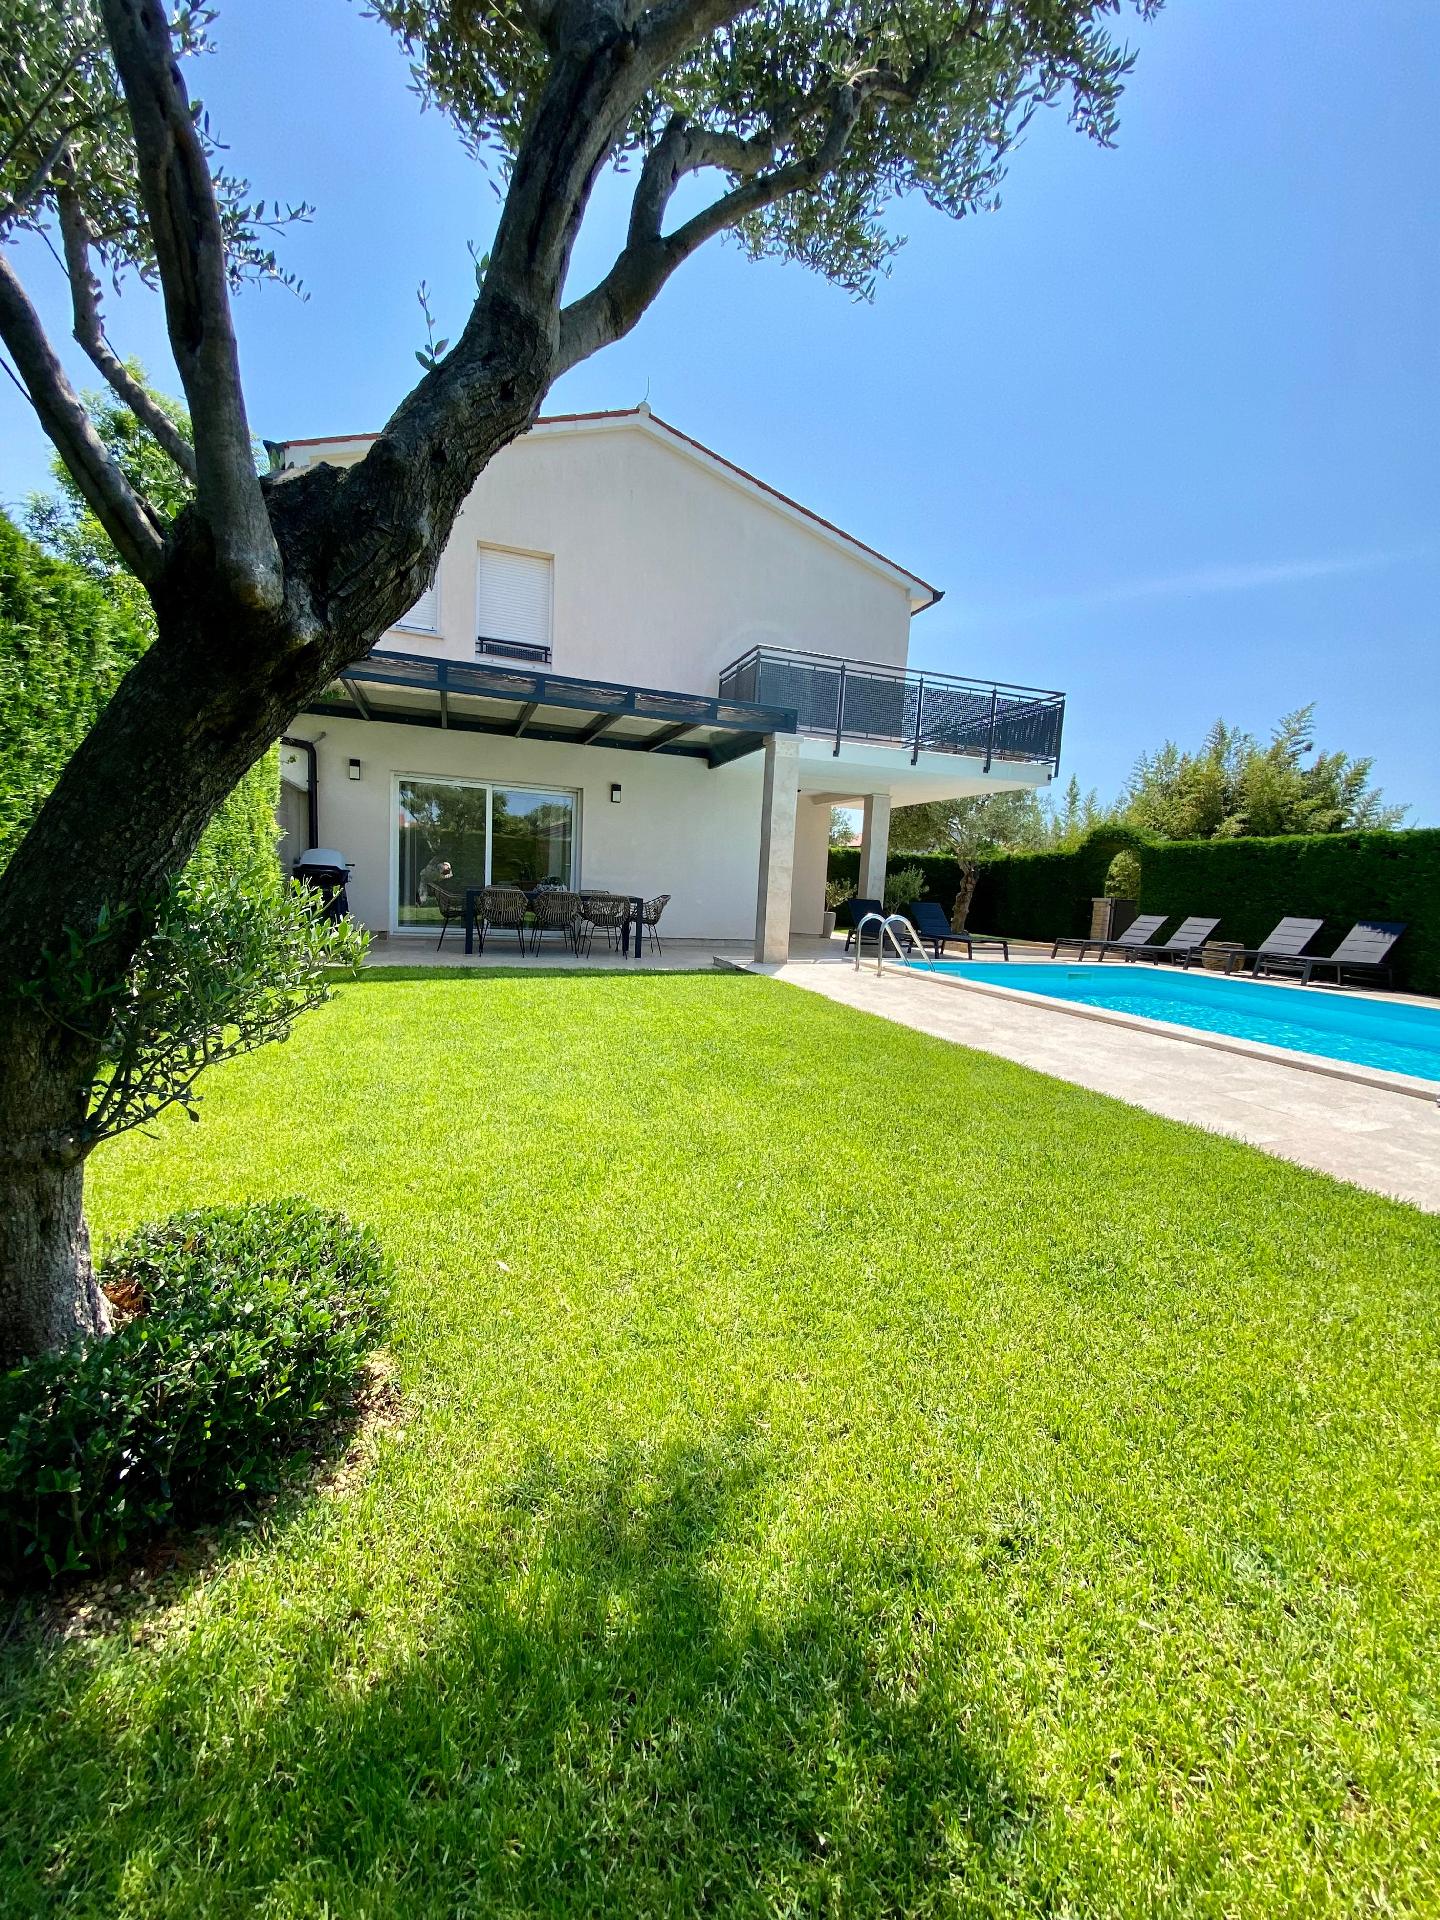 Villa mit Garten, Terrasse und Pool mit Gegenstrom Ferienhaus in Kroatien